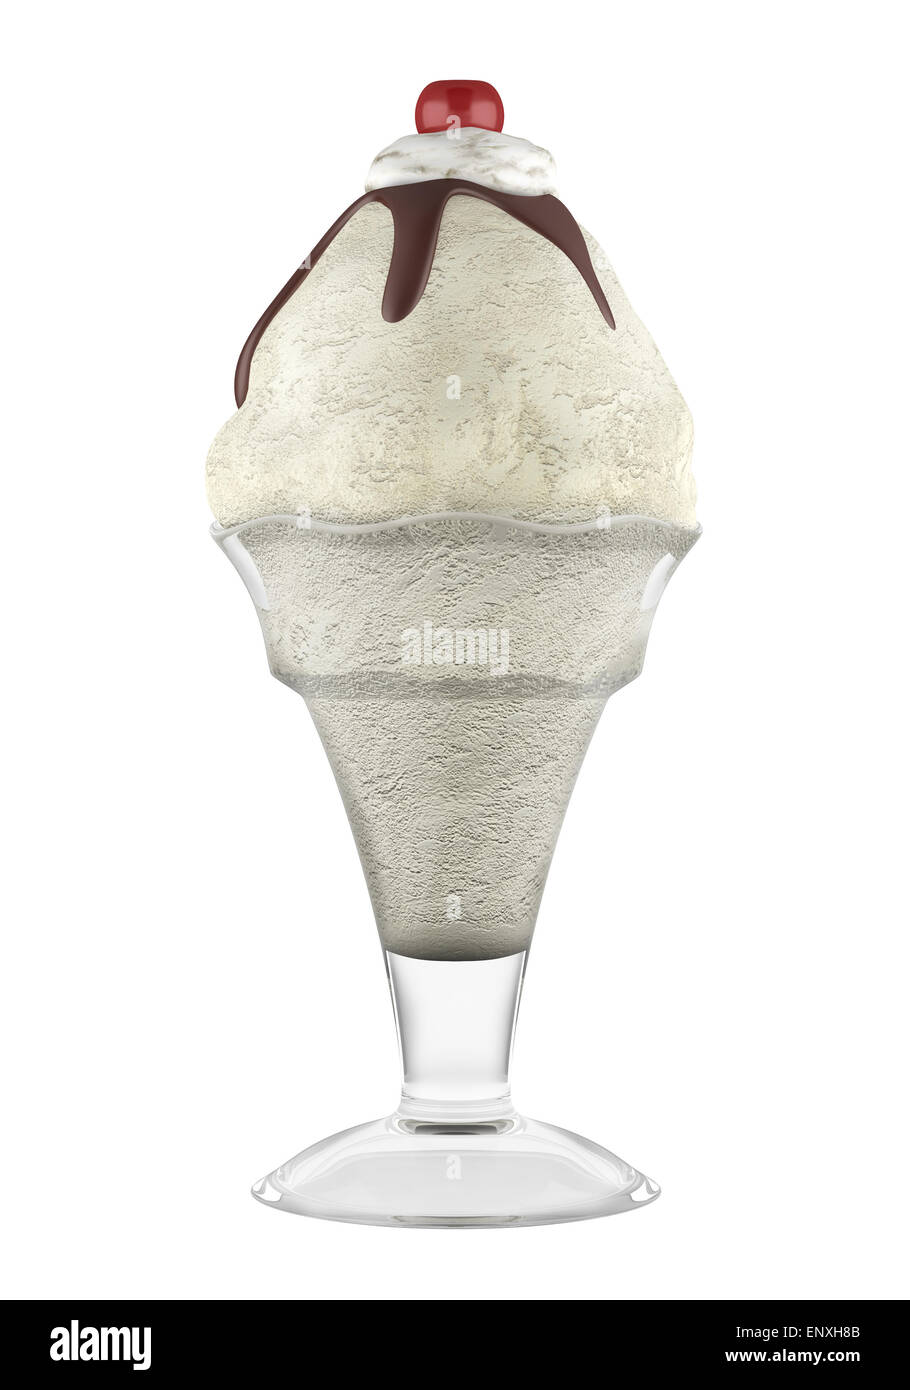 La crème glacée dans un gobelet isolé sur fond blanc Banque D'Images